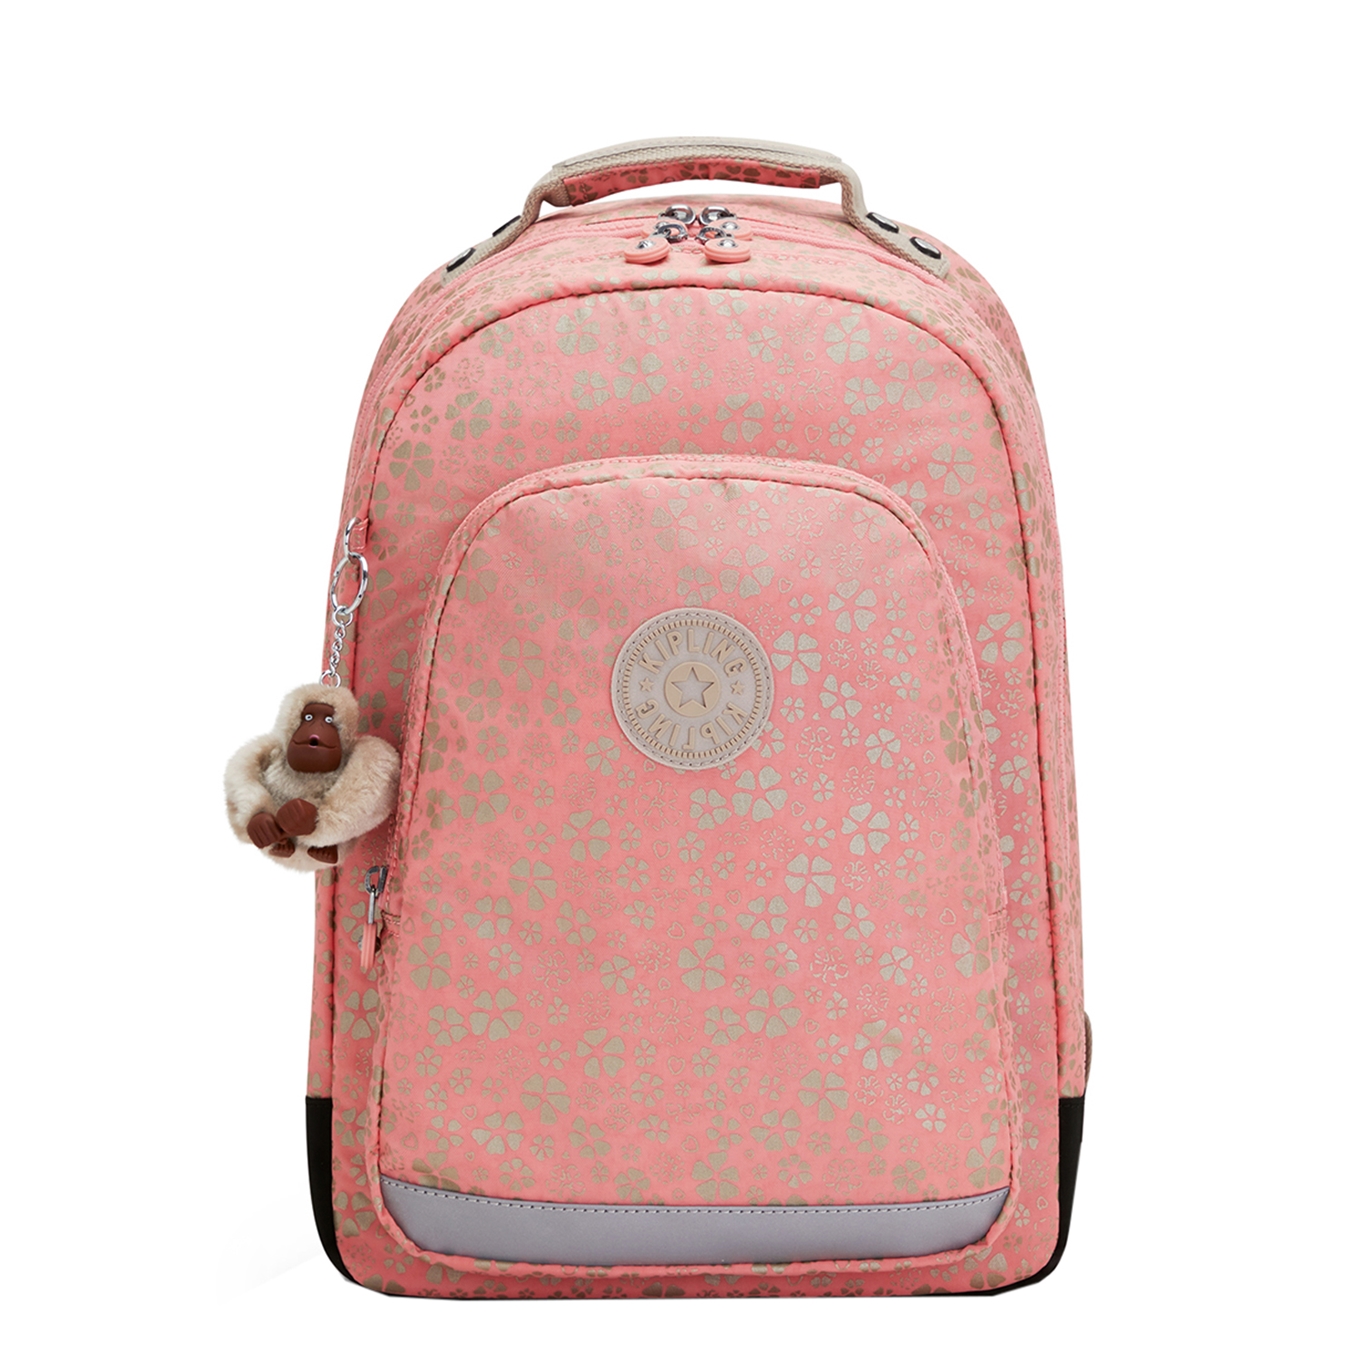 Kipling Class Room sweet metfloral backpack - Tas2go